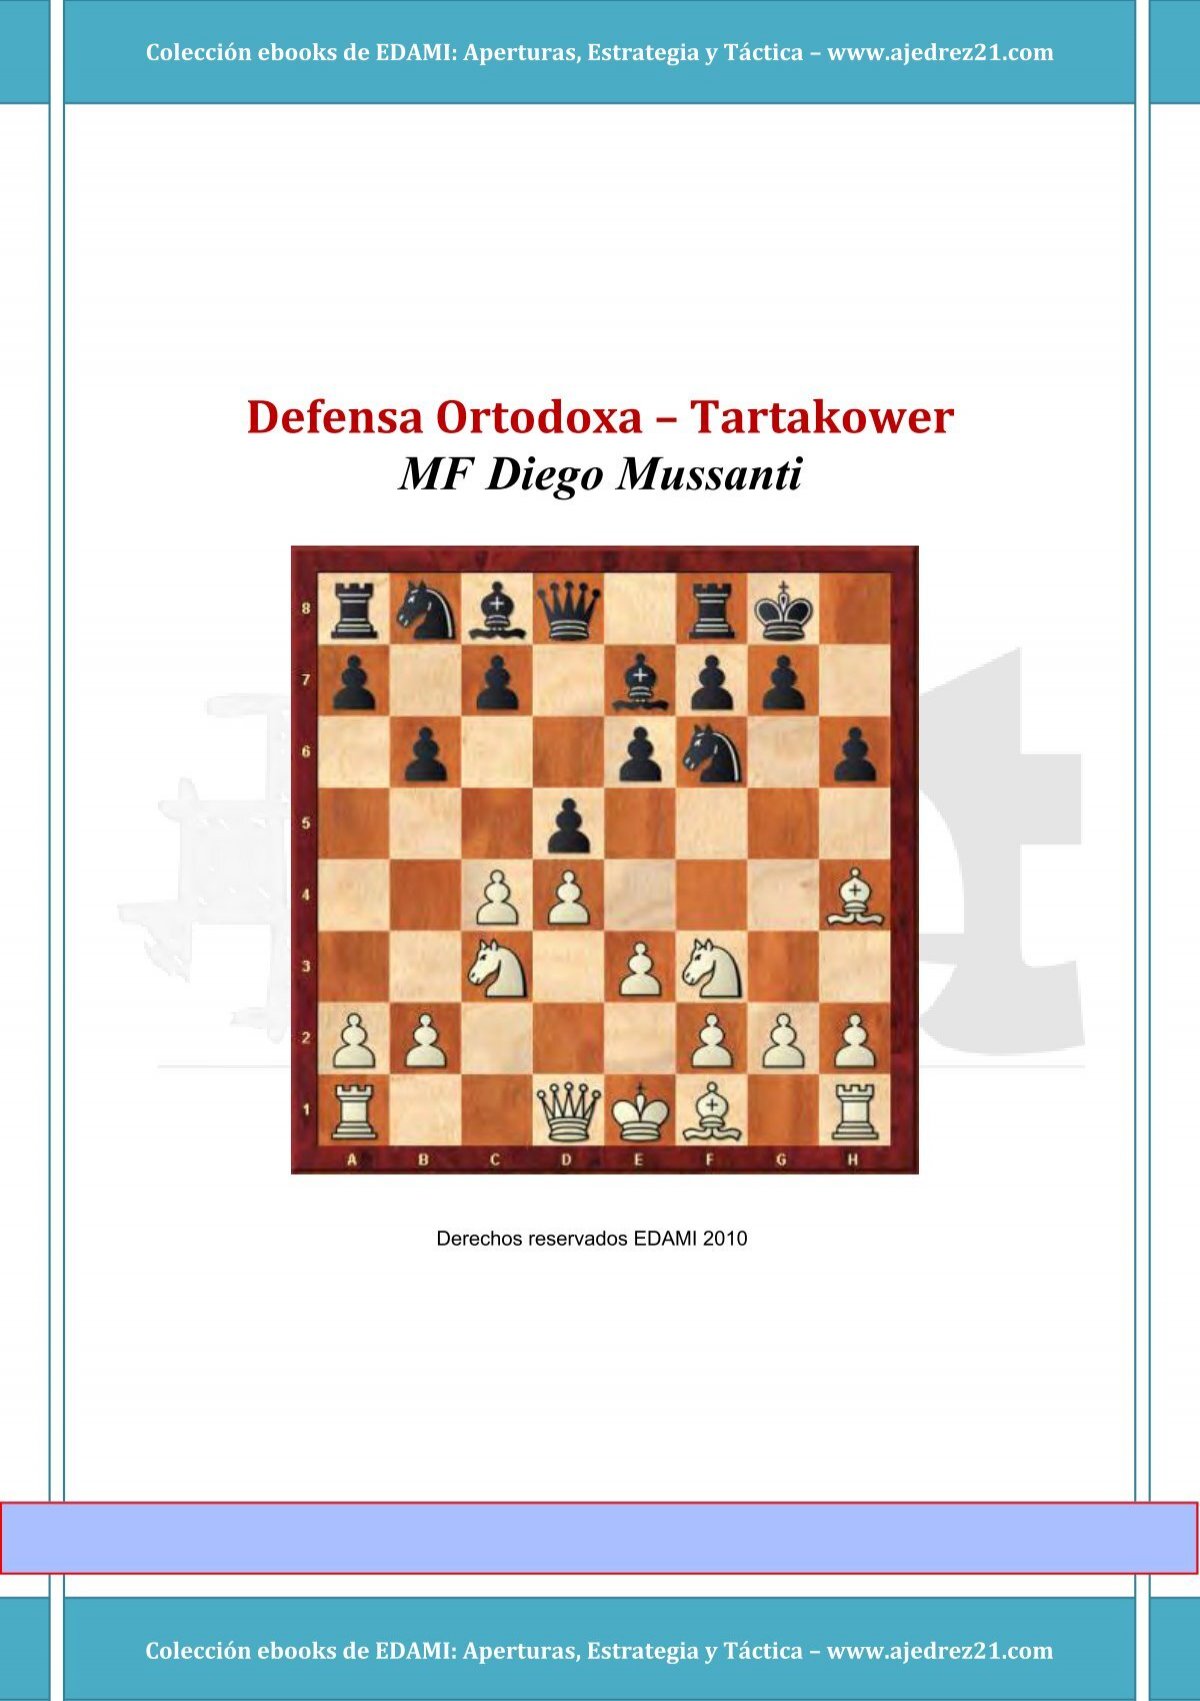 Ebook: Siciliana Dragón - Ataque Yugoslavo (1)